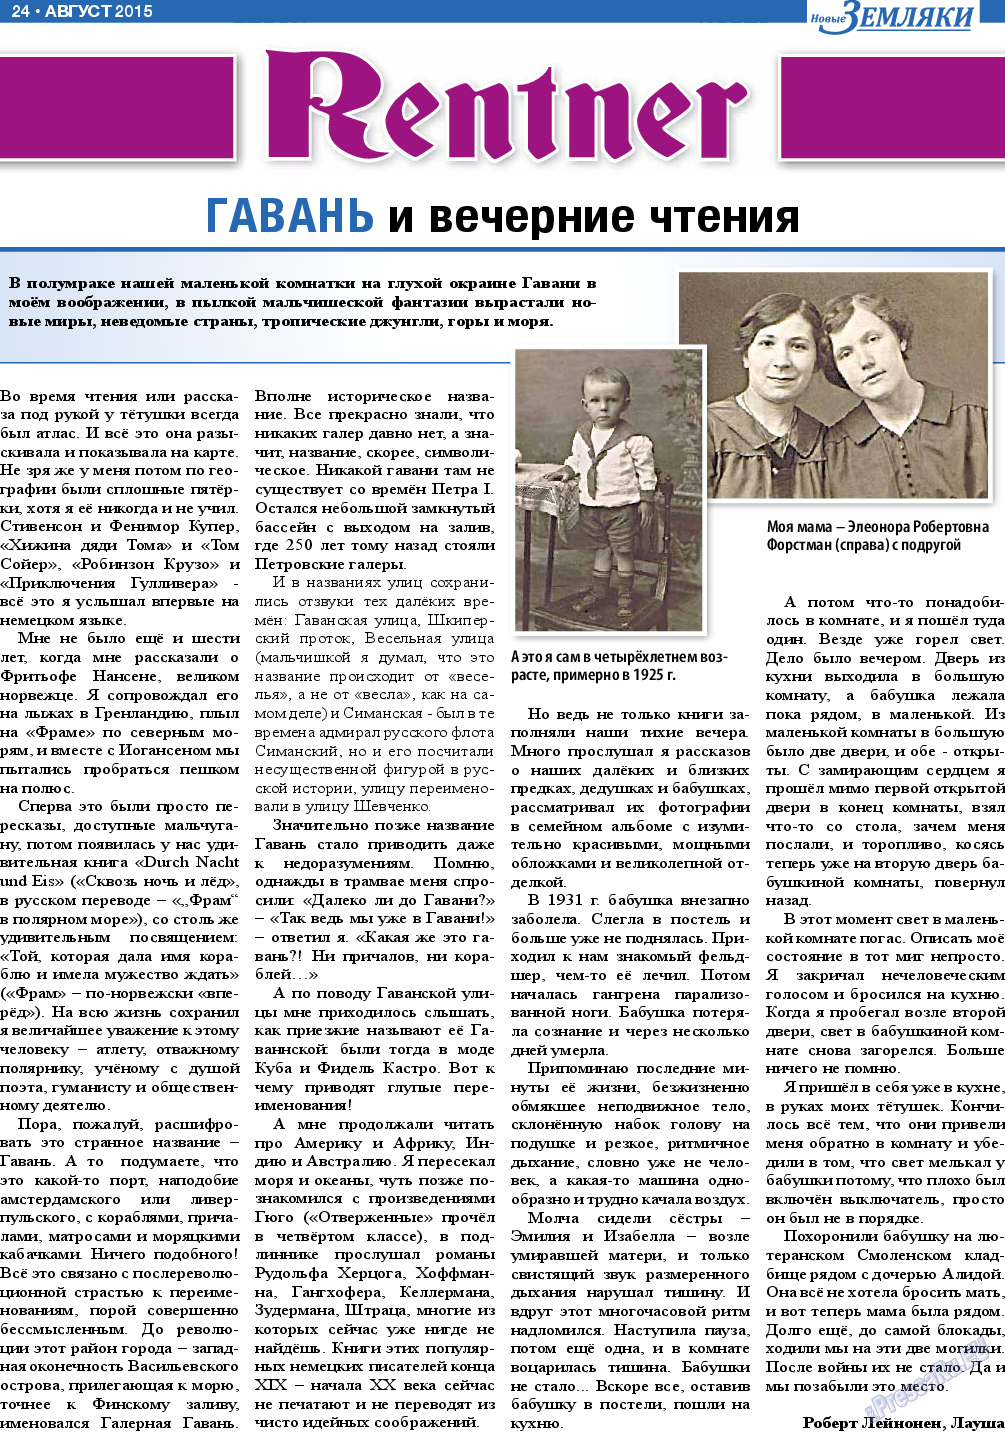 Новые Земляки, газета. 2015 №8 стр.24